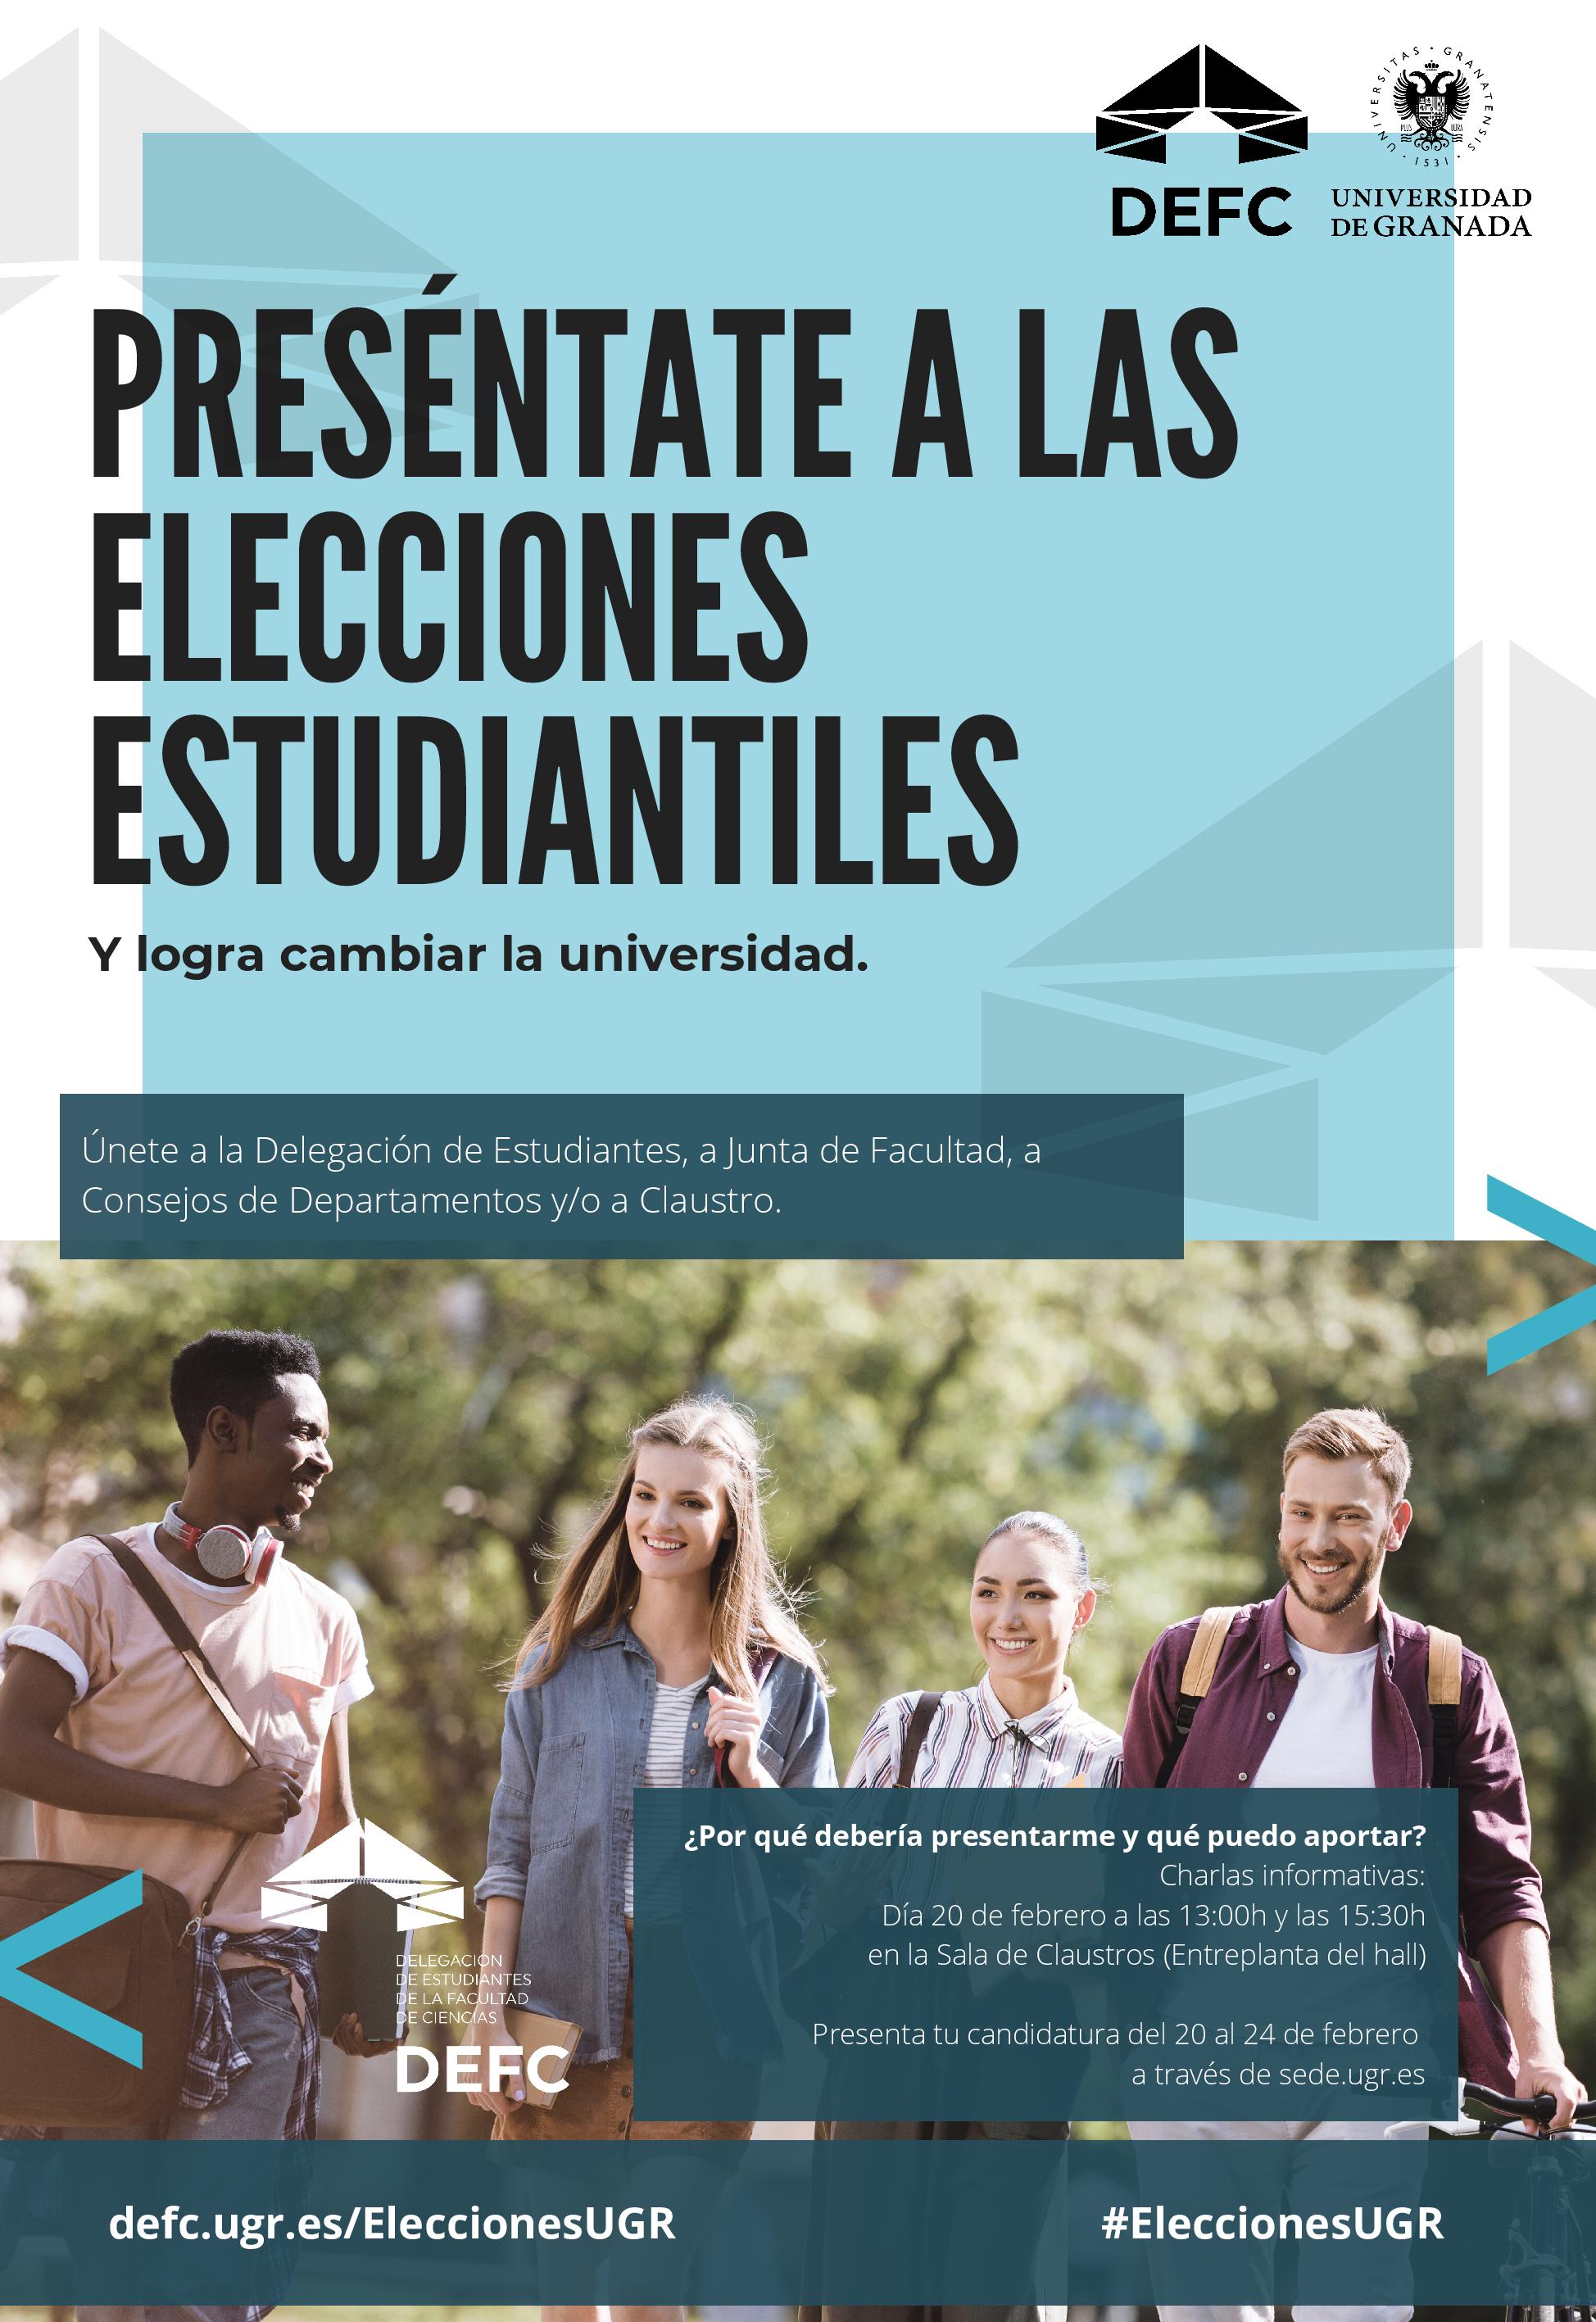 Cartel informando de las elecciones estudiantiles